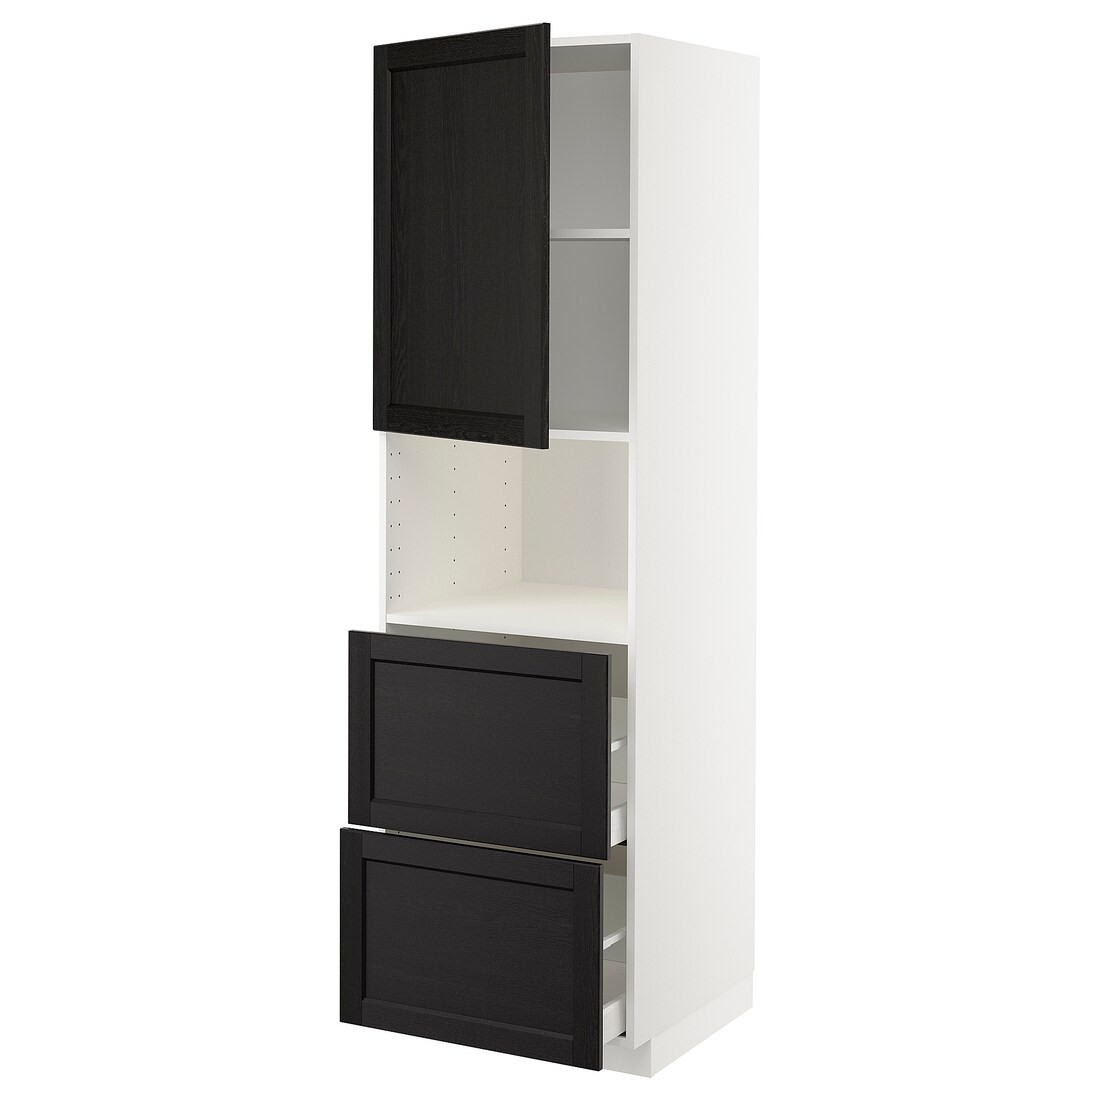 METOD МЕТОД / MAXIMERA МАКСИМЕРА Высокий шкаф для микроволновки с дверями / 2 ящика, белый / Lerhyttan черная морилка, 60x60x200 см